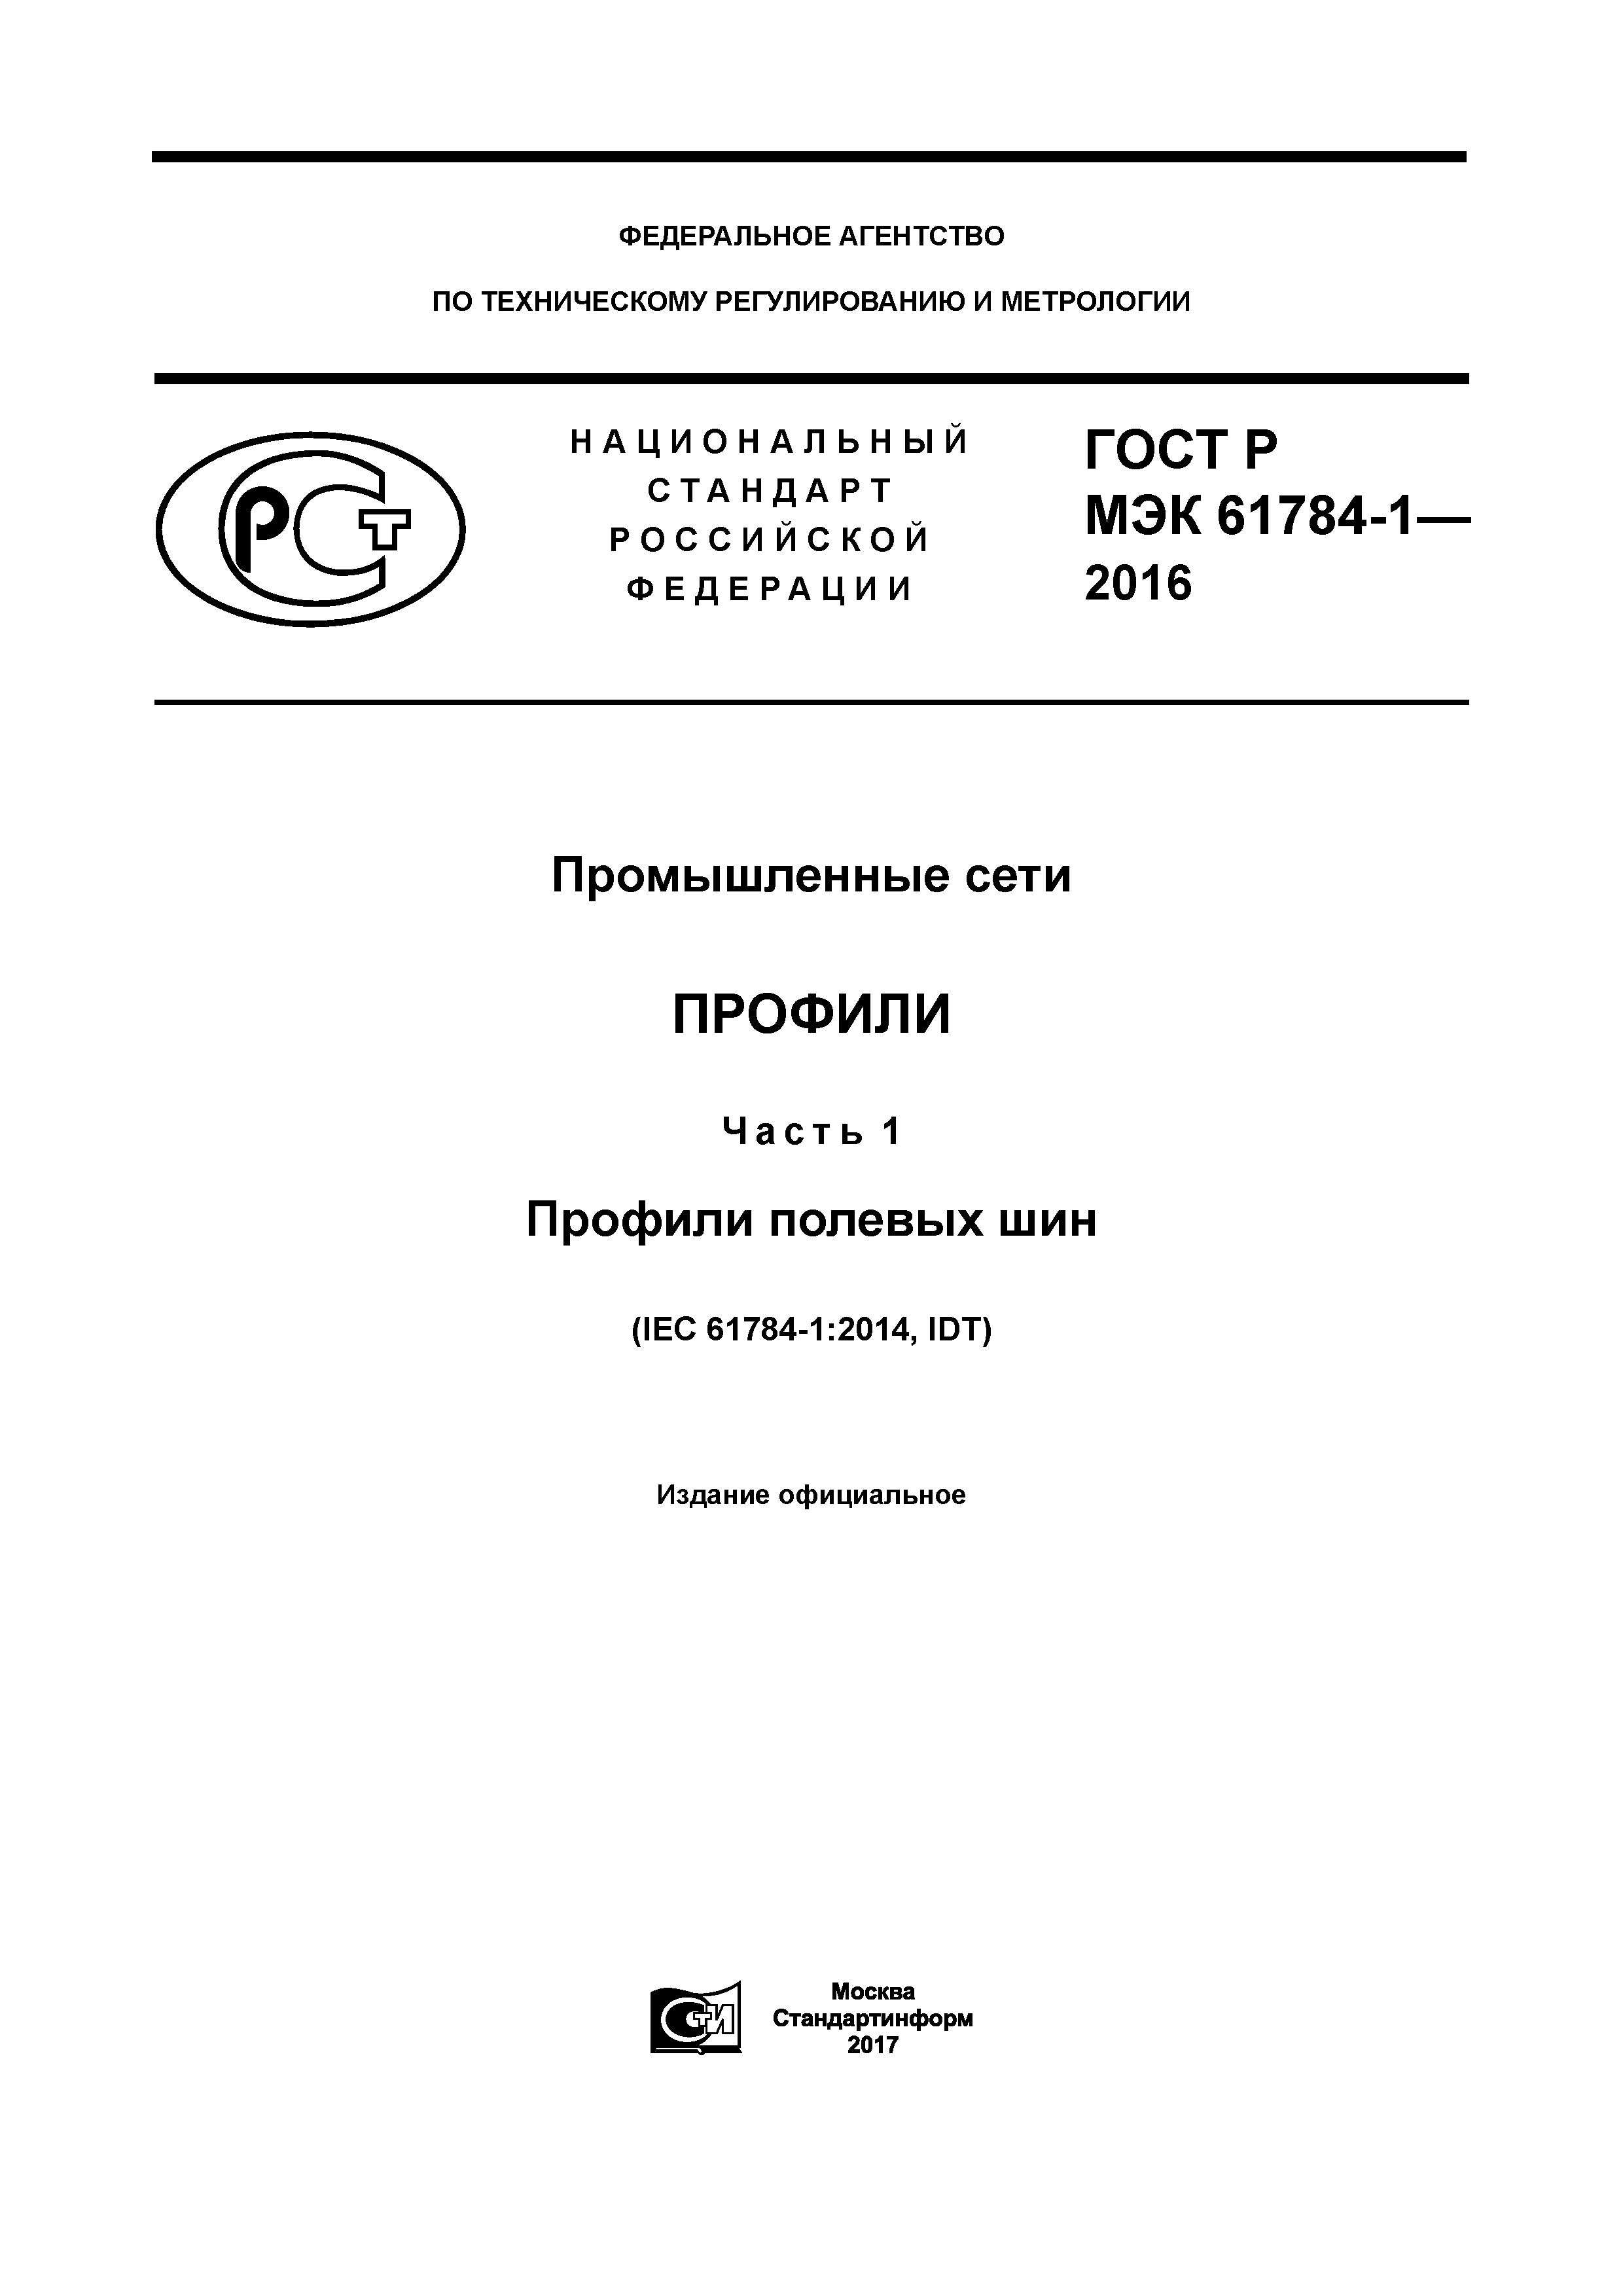 ГОСТ Р МЭК 61784-1-2016